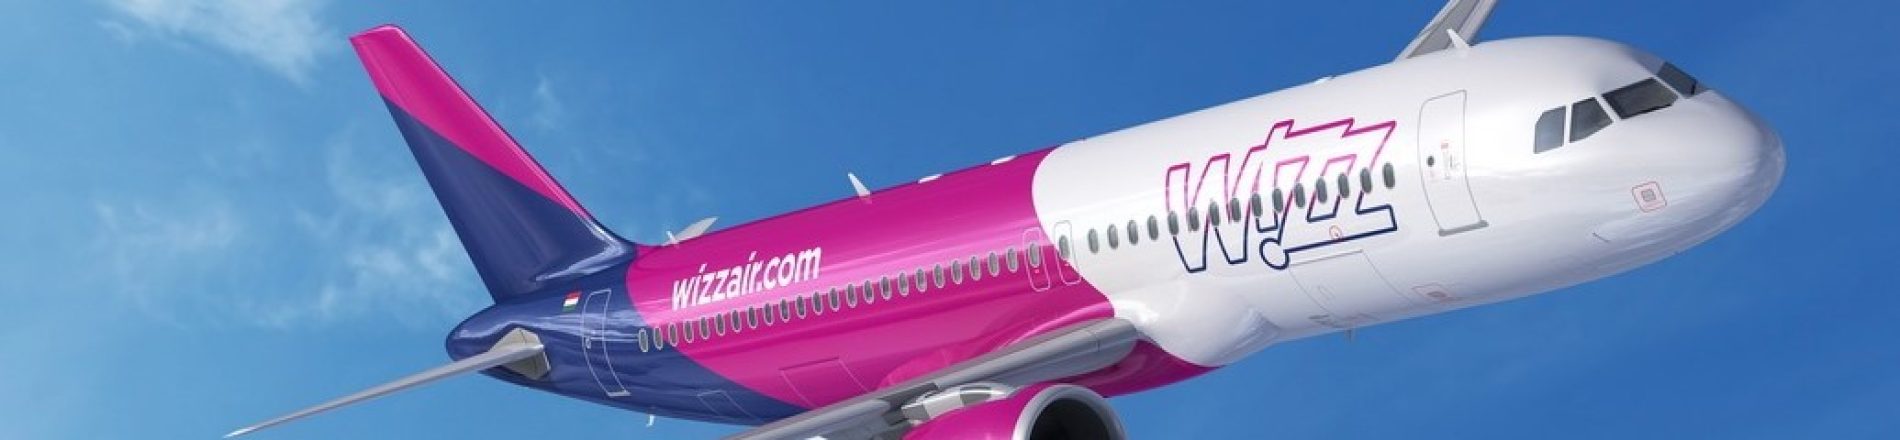 Wizz-air-aereo